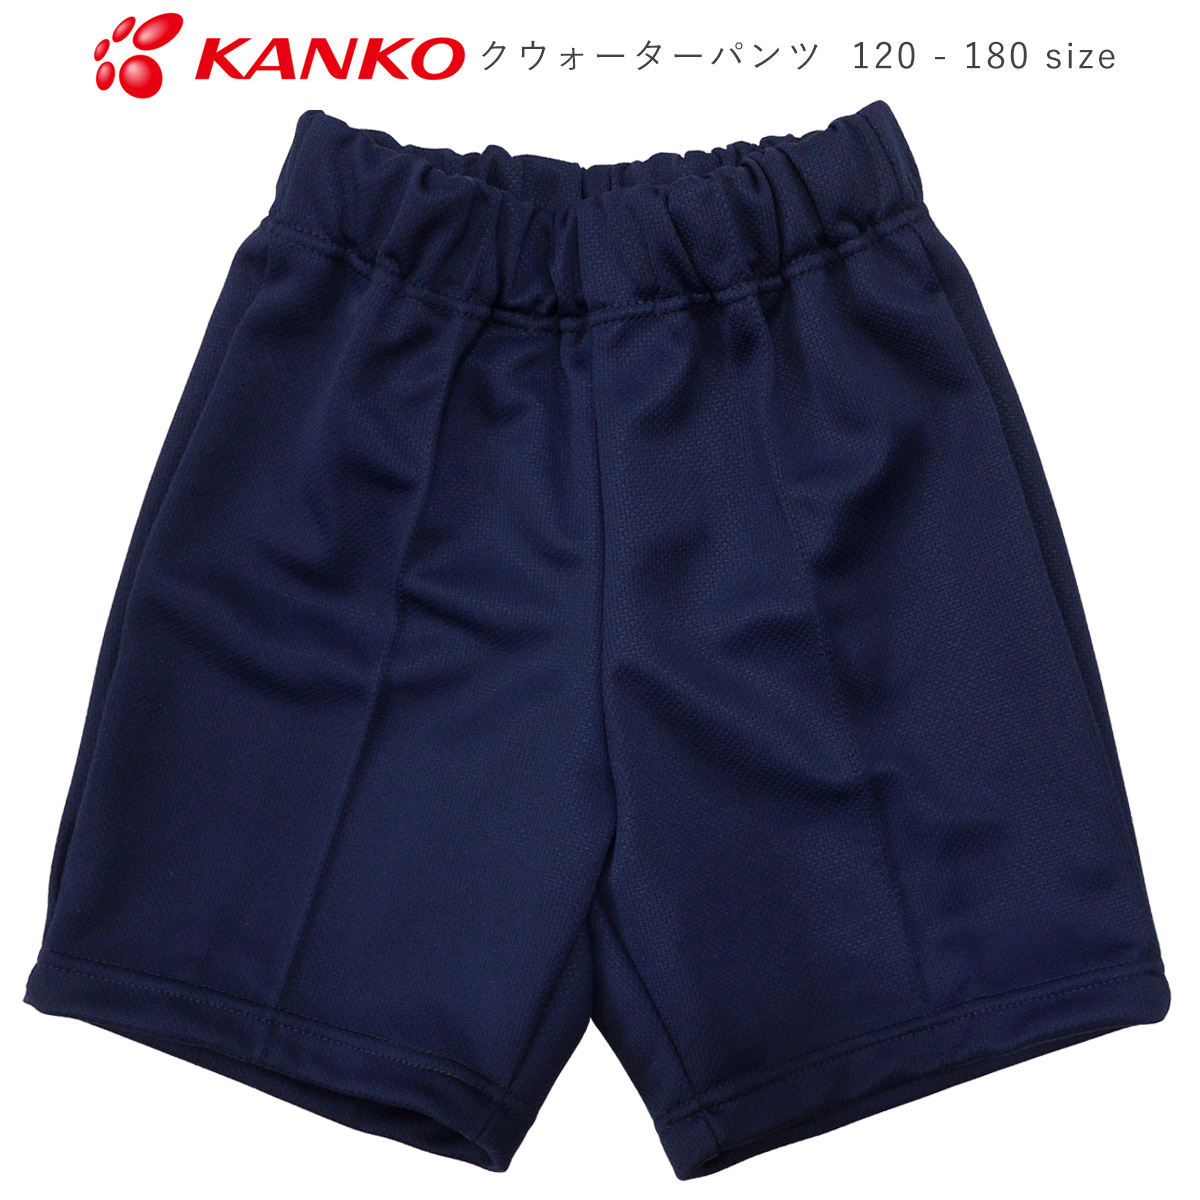 体操服 体操着 子供 kanko カンコー KA2222 運動着 フリージーパンツ 小学校 紺画像